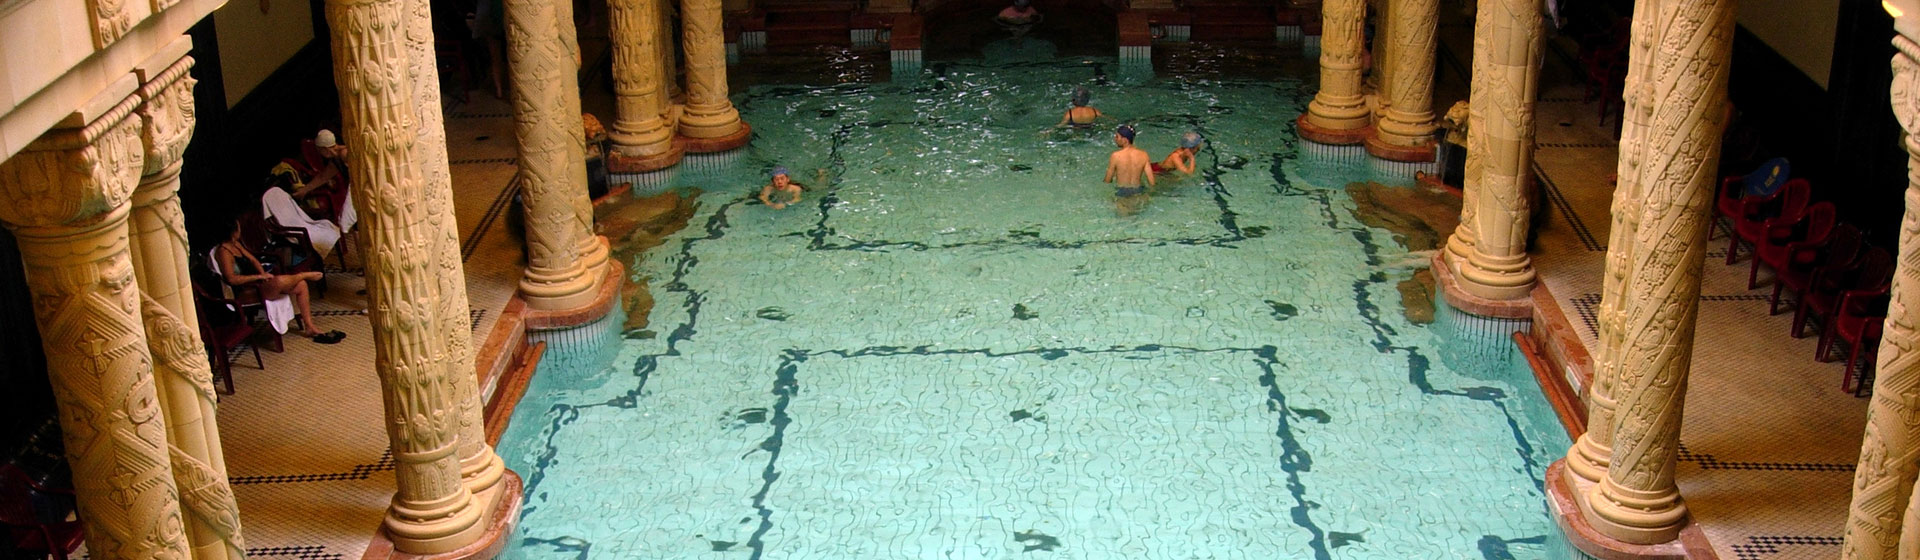 Pool in Ungarn 